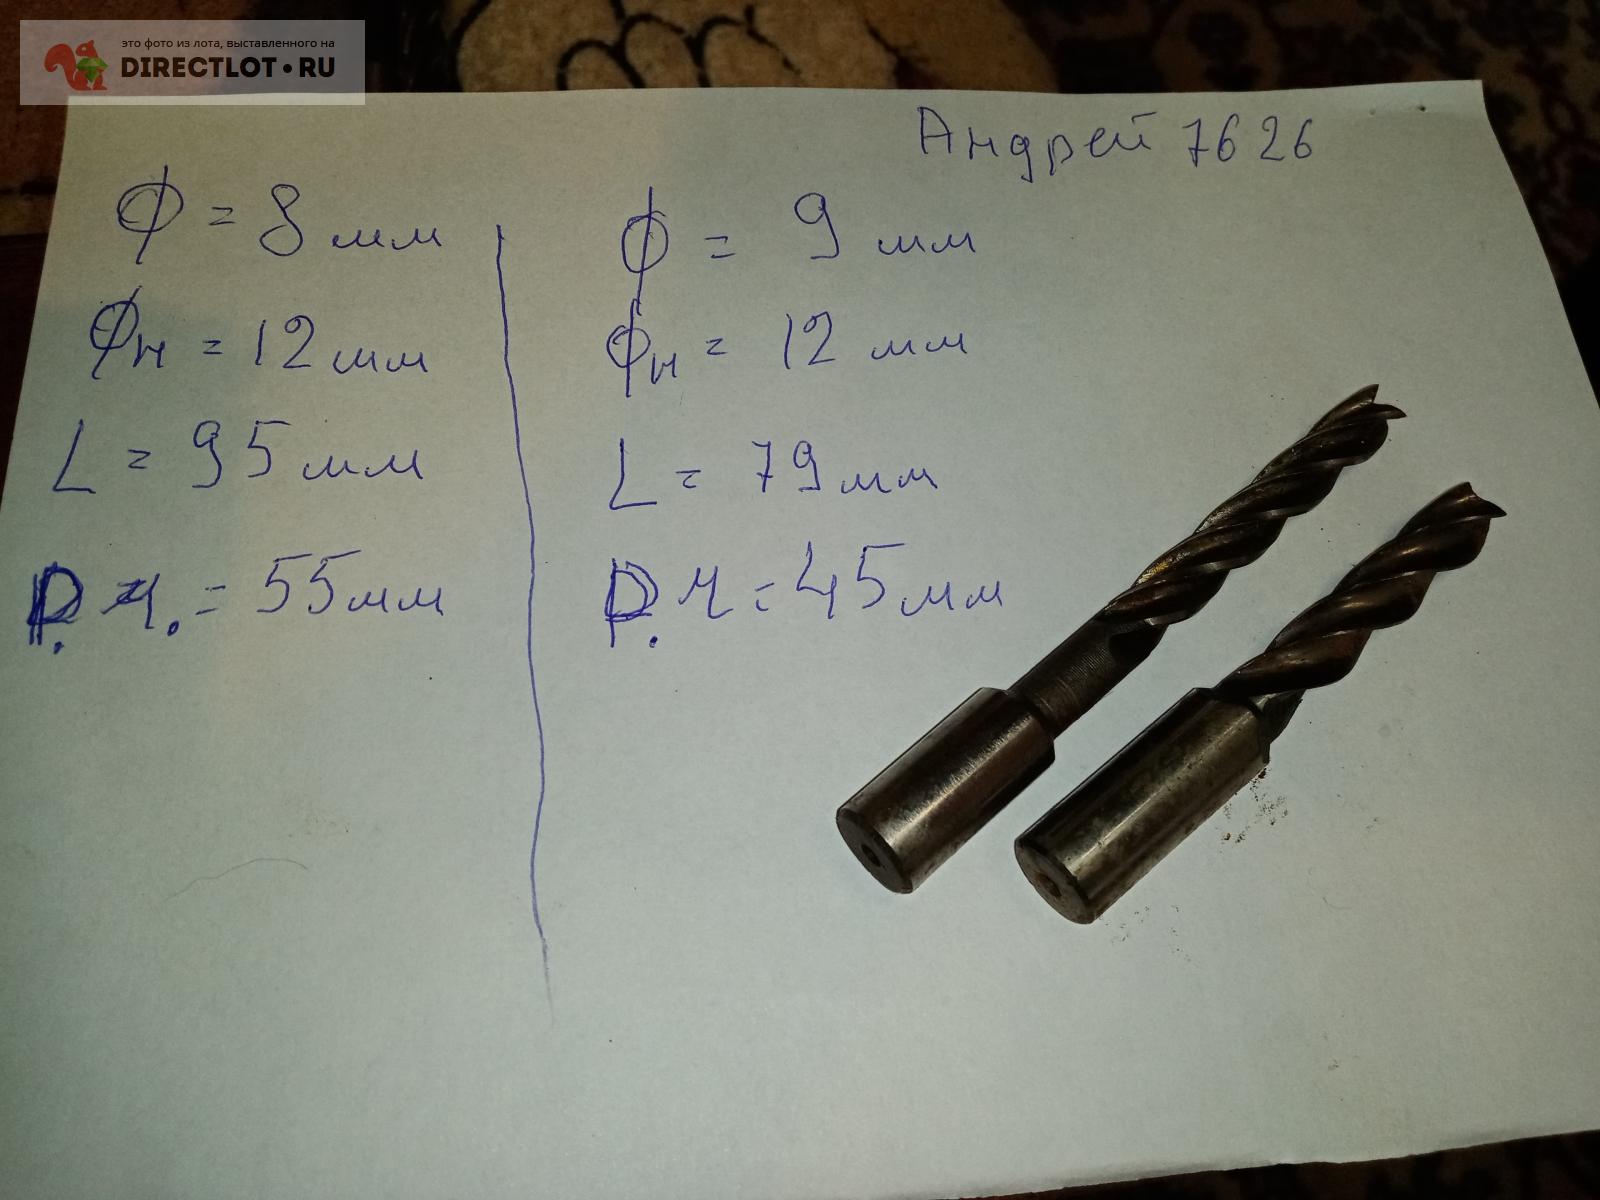  концевая Ф -8 мм,, ц. хв. - 12 мм,. раб,час - 55 мм , 95 длина .